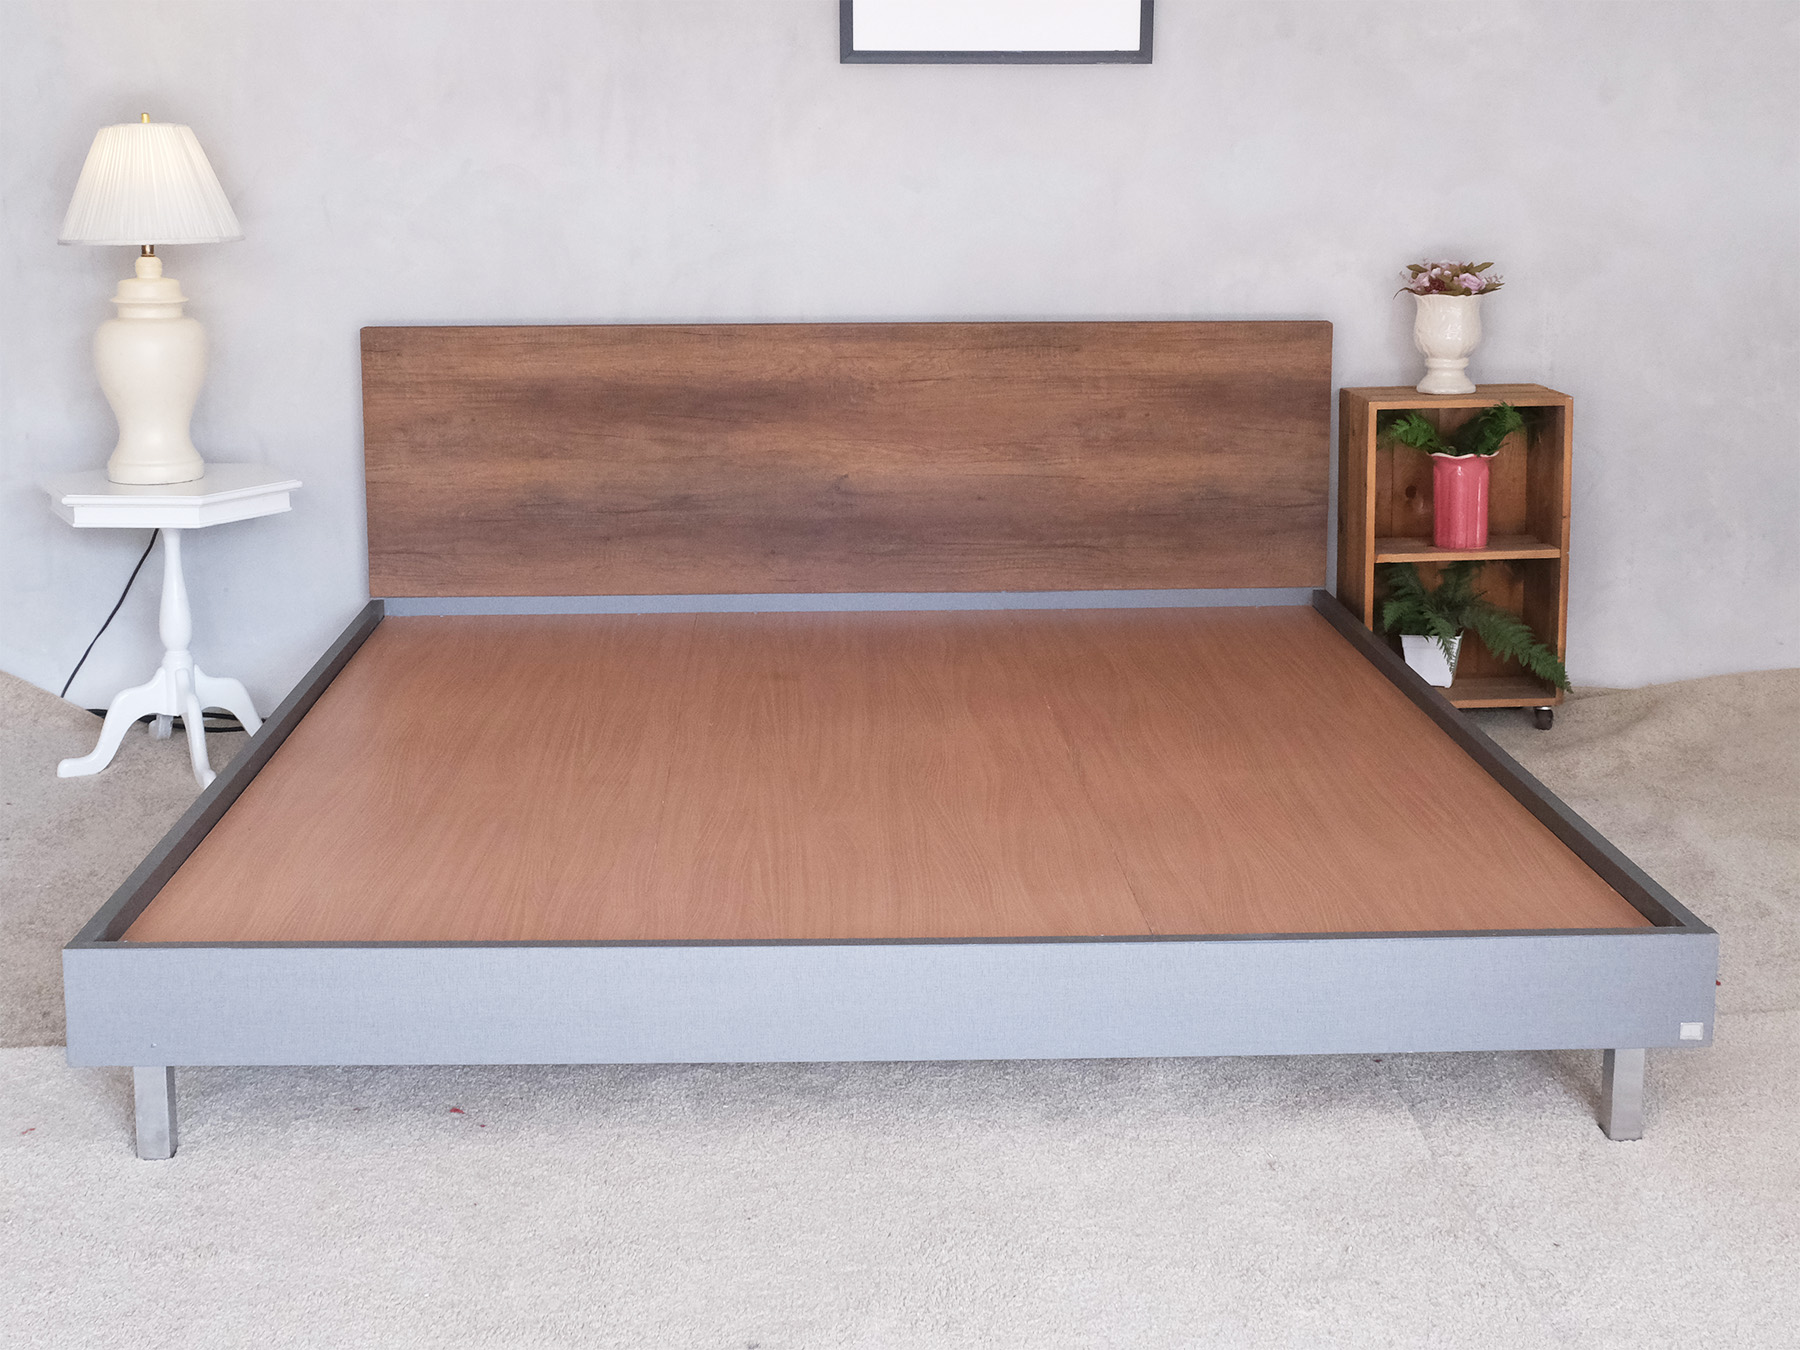 เตียง6ฟุต โครงเหล็กสีเทา หัวเตียงลายไม้ แบรนด์ SB Furniture (1)